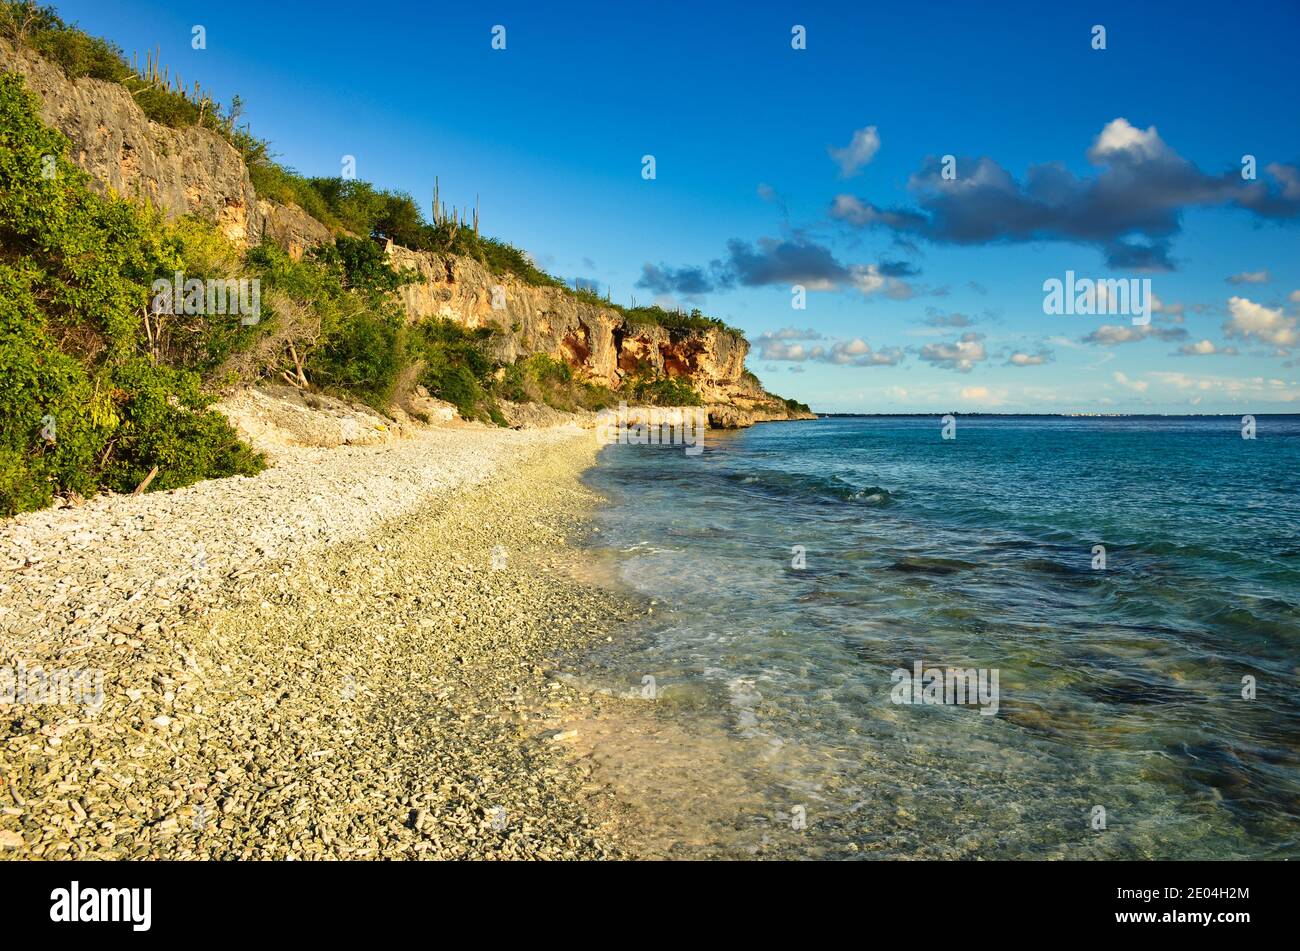 Schöner Strand auf der karibischen Insel bonaire, guter Schnorchel- und Tauchplatz auf der Insel. Genießen Sie die Entspannung im Sand am Meer Stockfoto